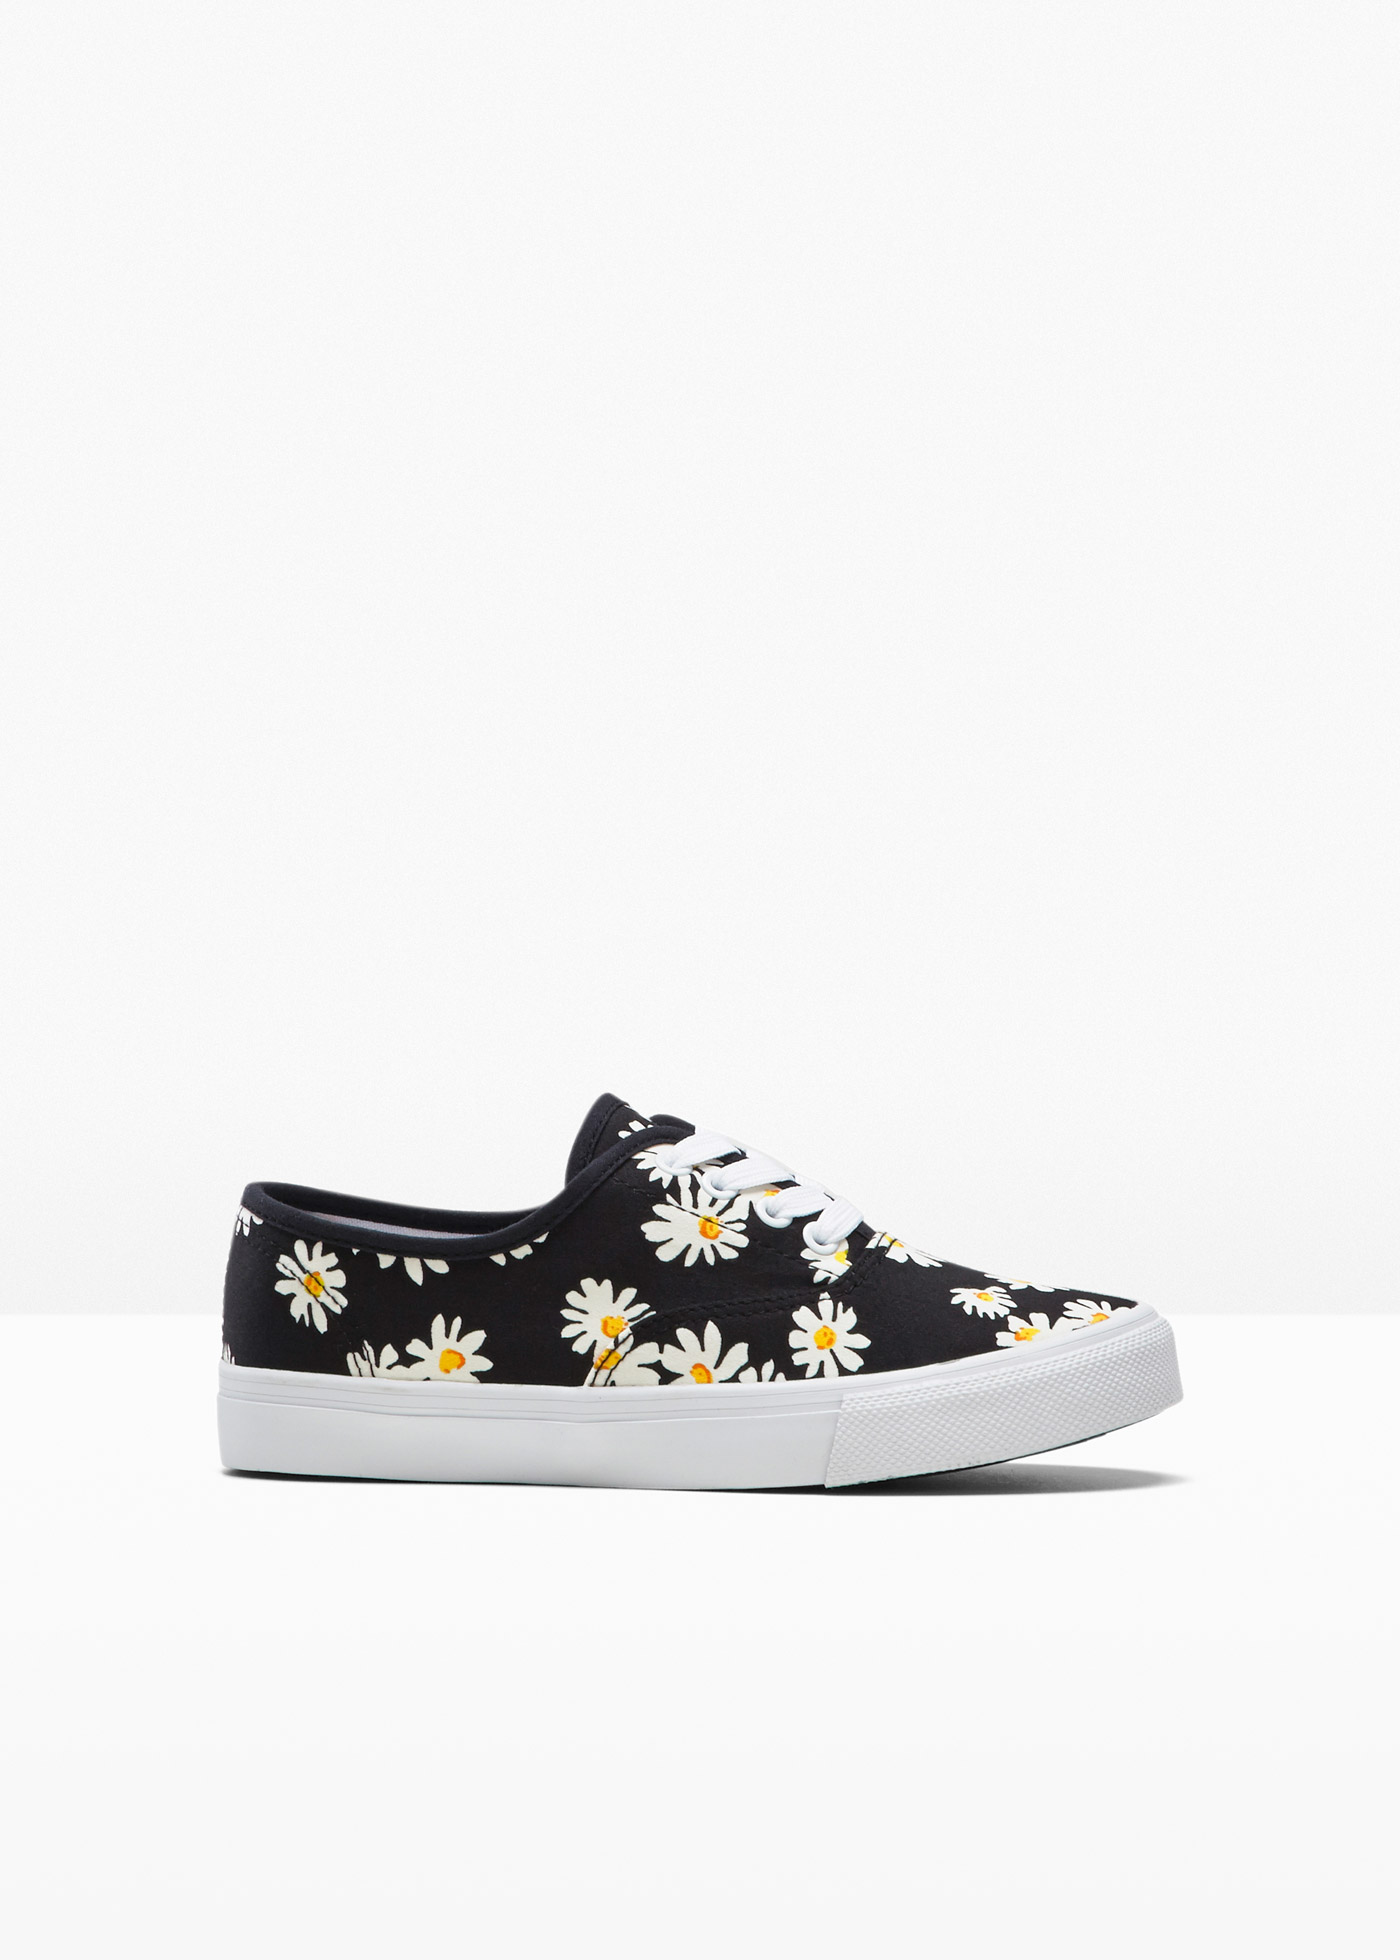 Schöner Sneaker mit Blumenmuster (90359995) in schwarz geblümt